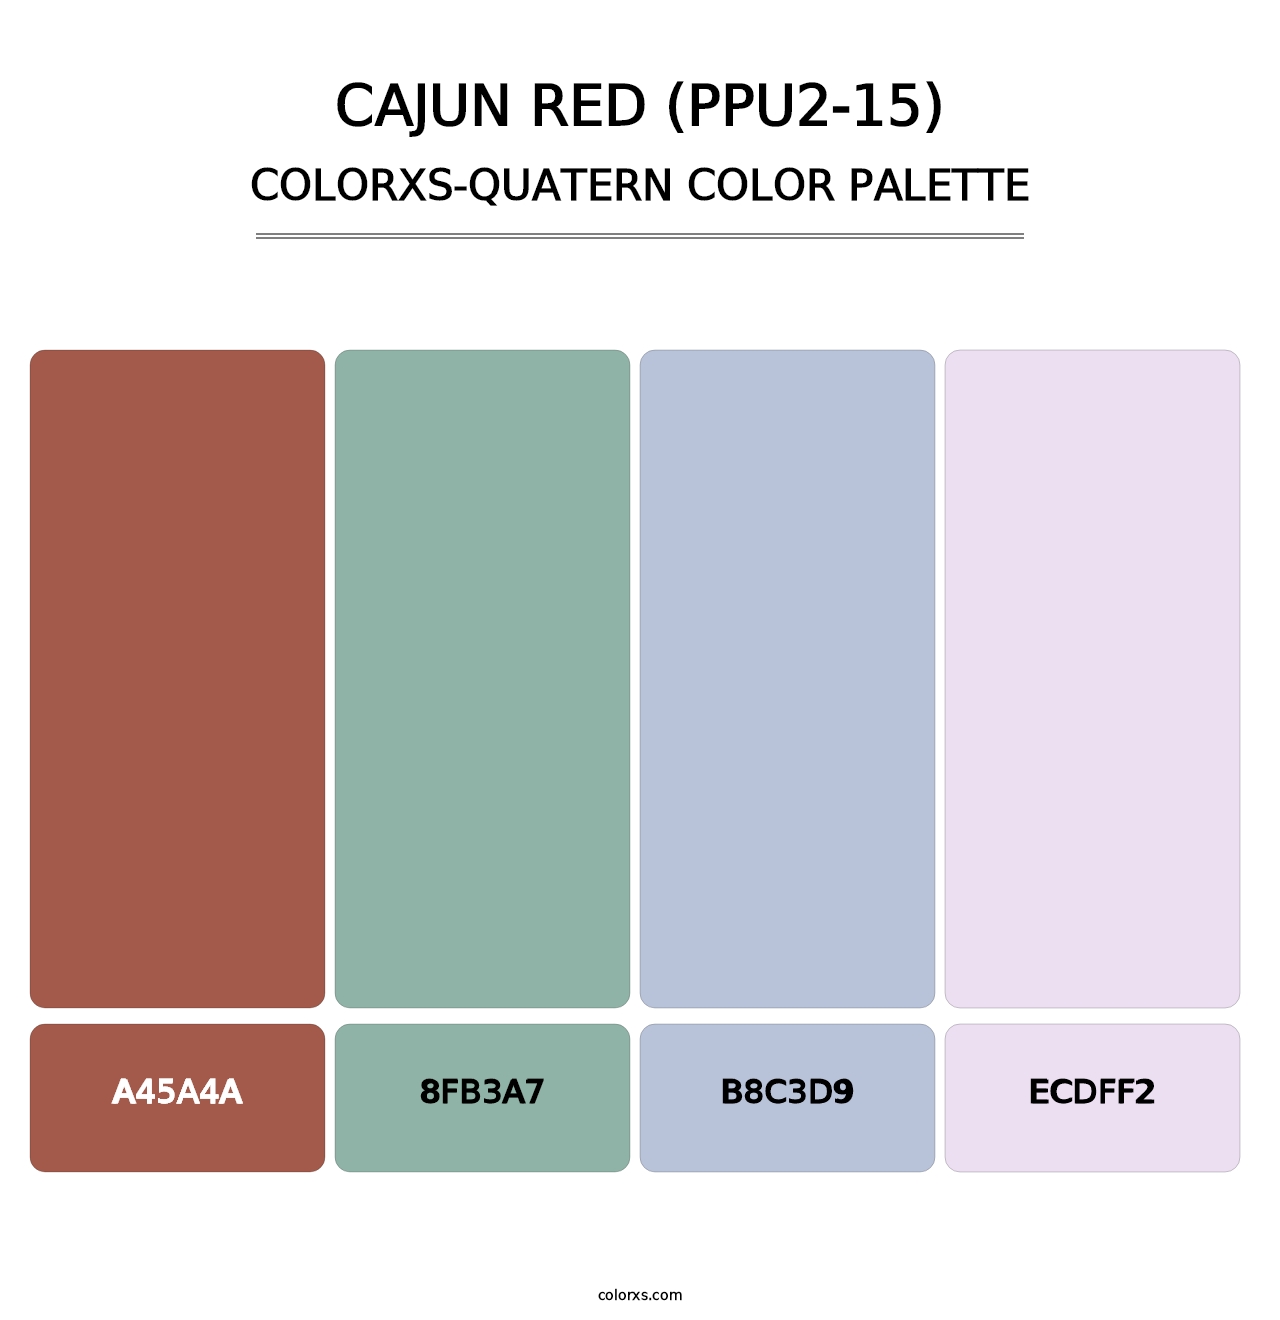 Cajun Red (PPU2-15) - Colorxs Quatern Palette